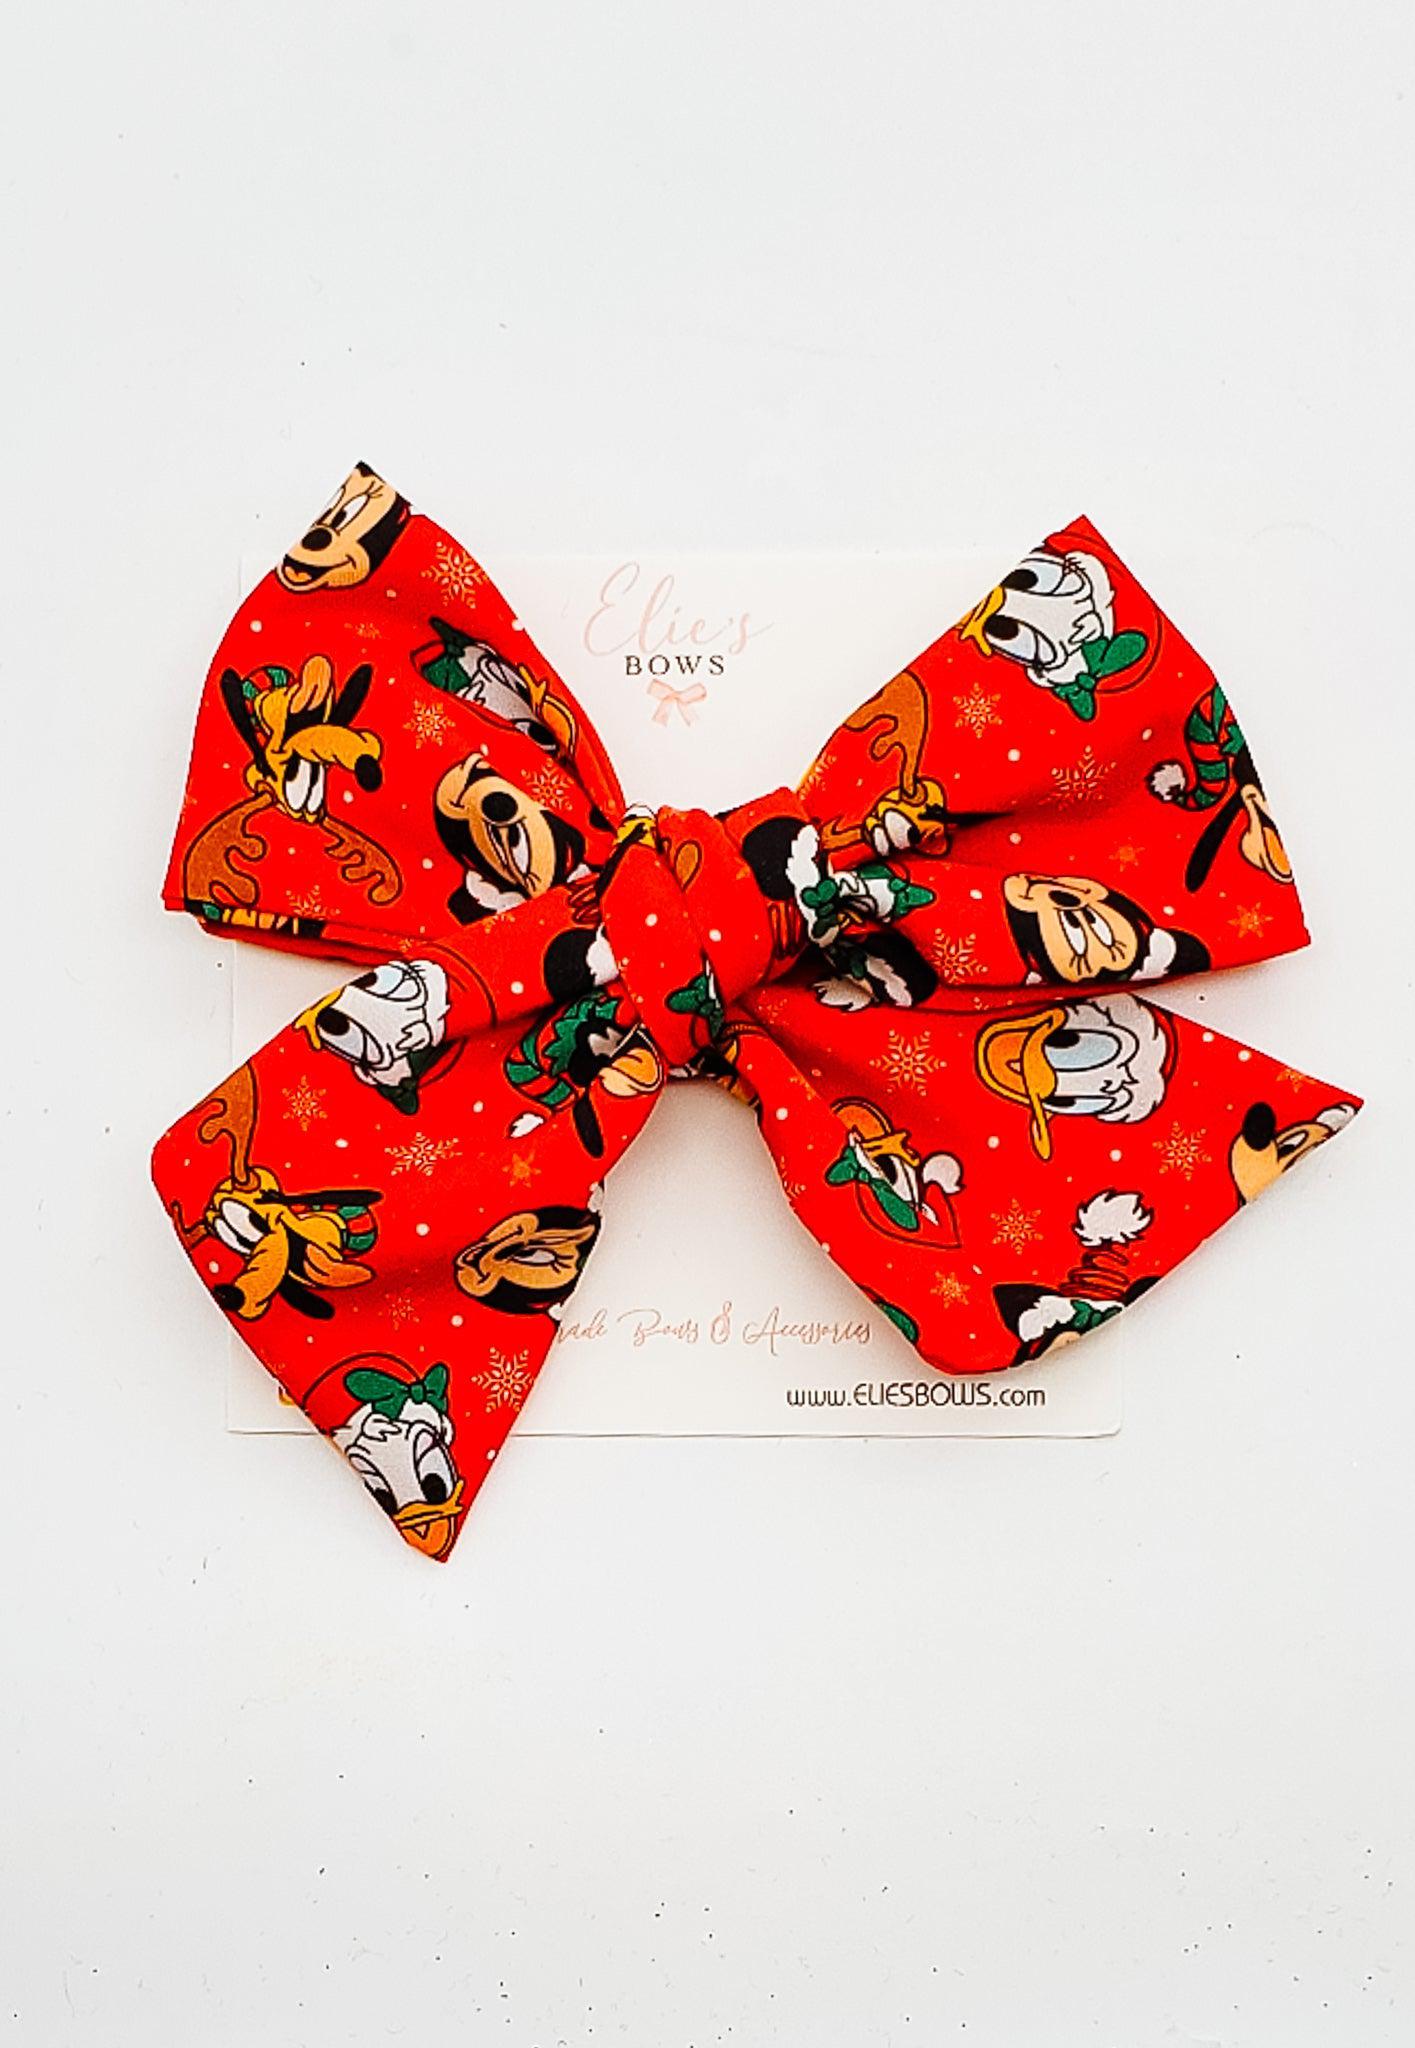 Merry Celebration - Elie Fabric Bow - 5"-Bows-Elie’s Bows